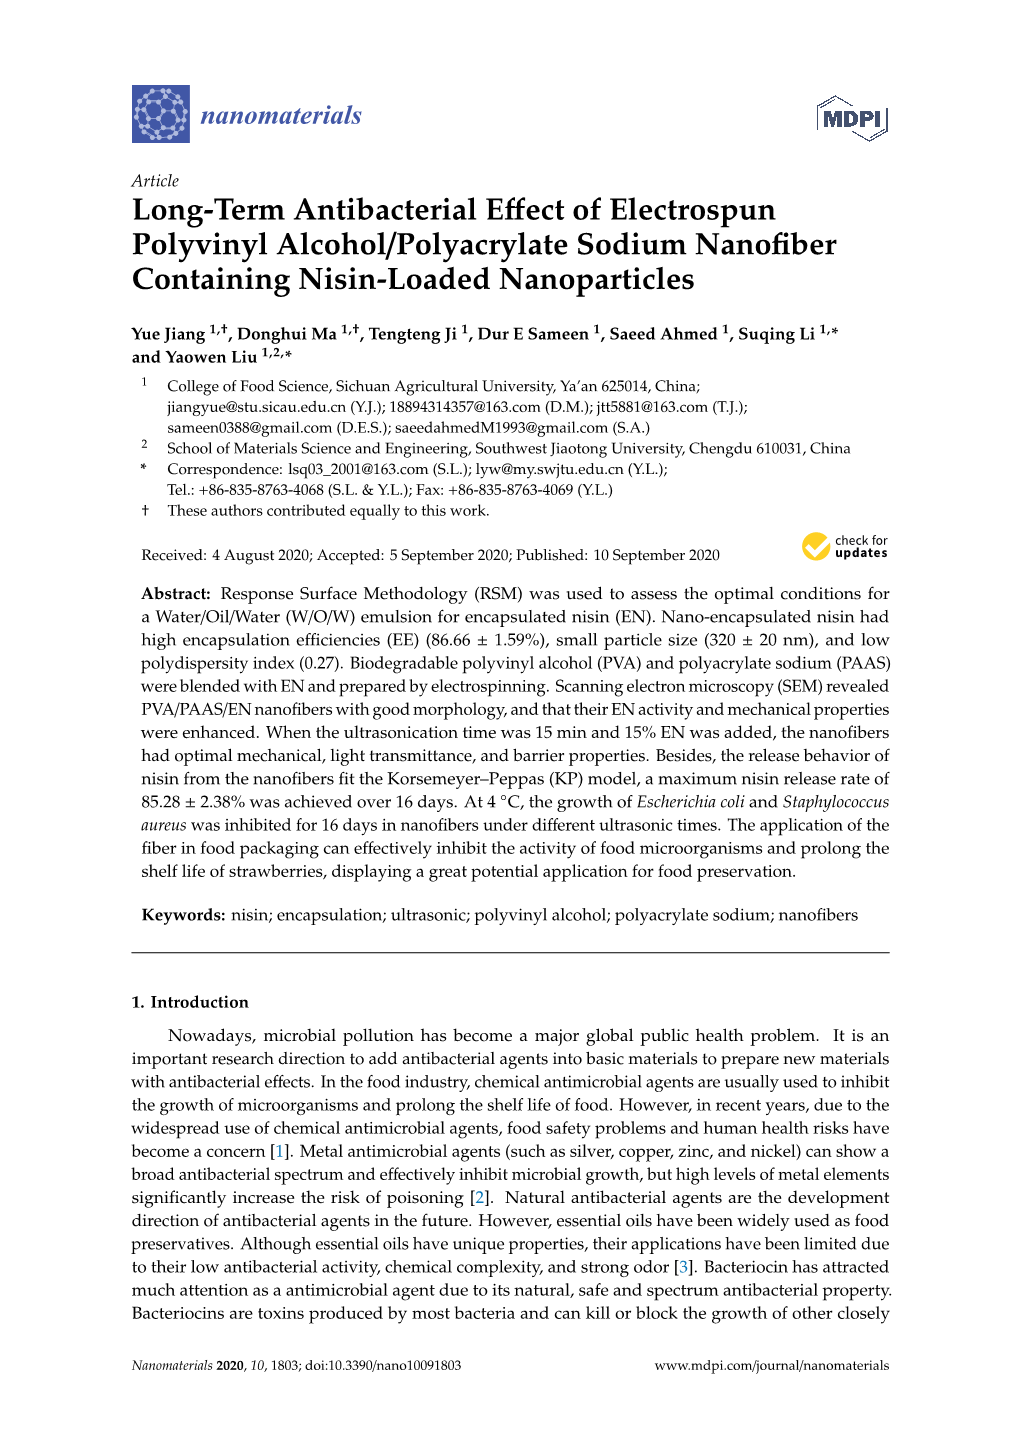 Long-Term Antibacterial Effect of Electrospun Polyvinyl Alcohol